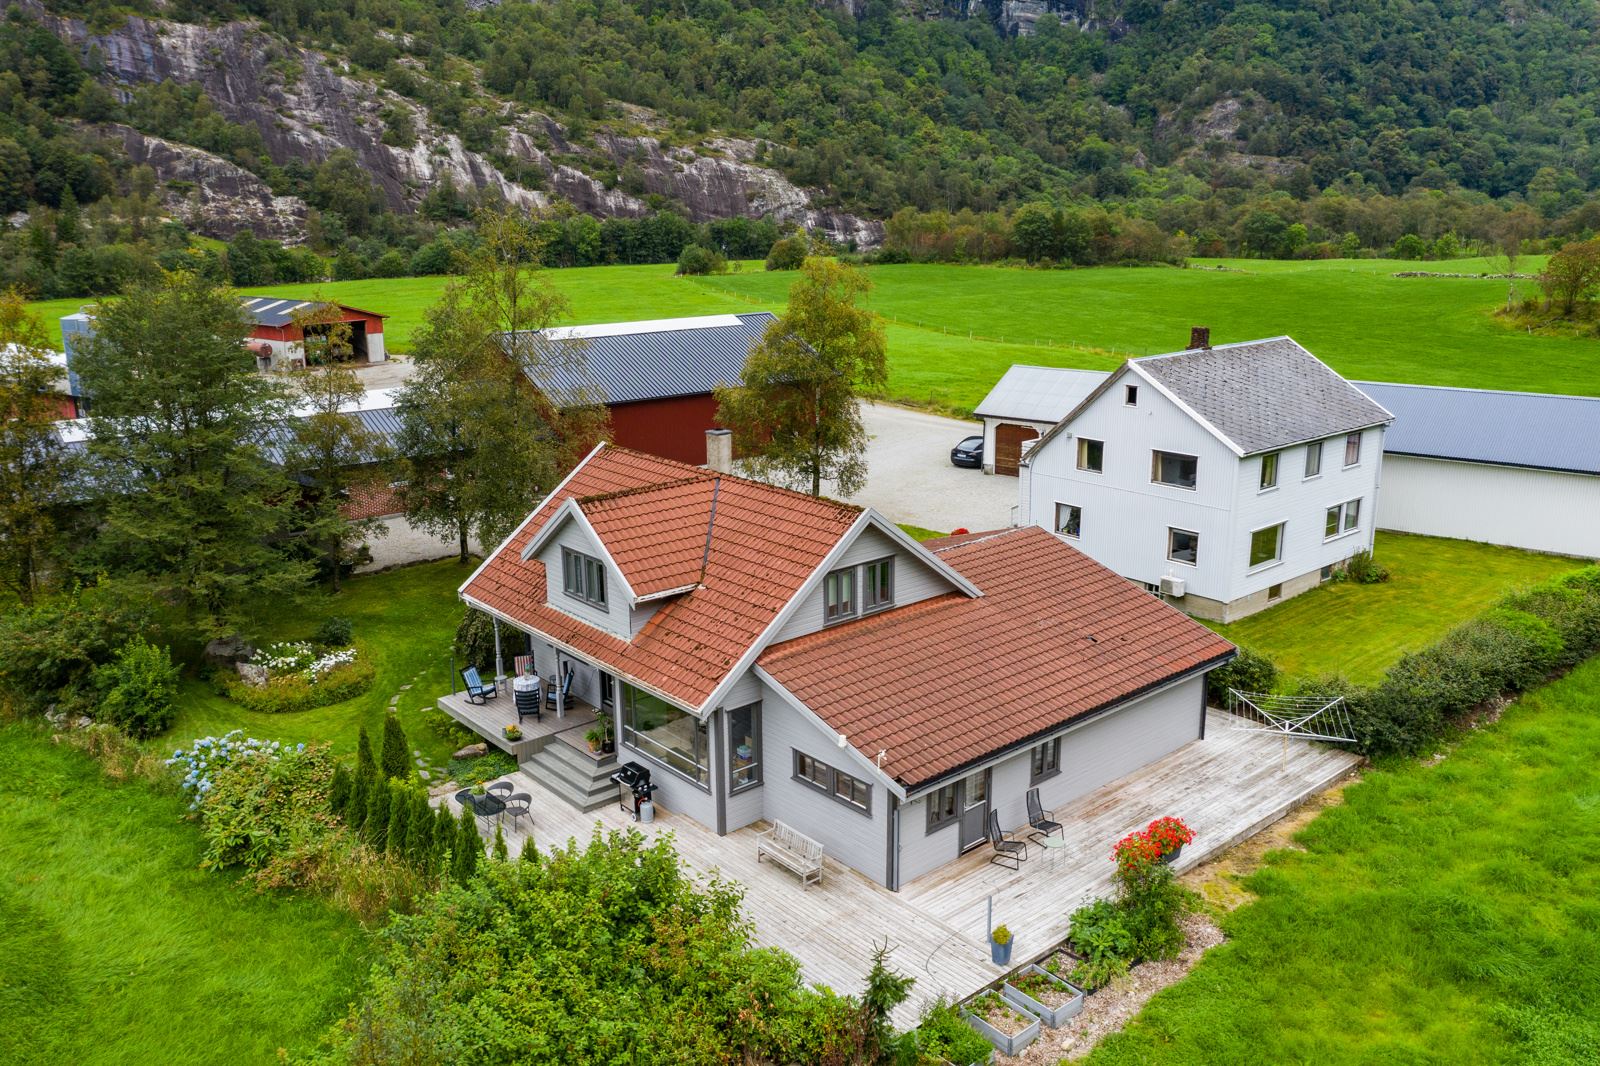 Følg denne linken for 360-visning av eiendommen: https://truevirtualtours.com/panorama/frafjordgarden-118